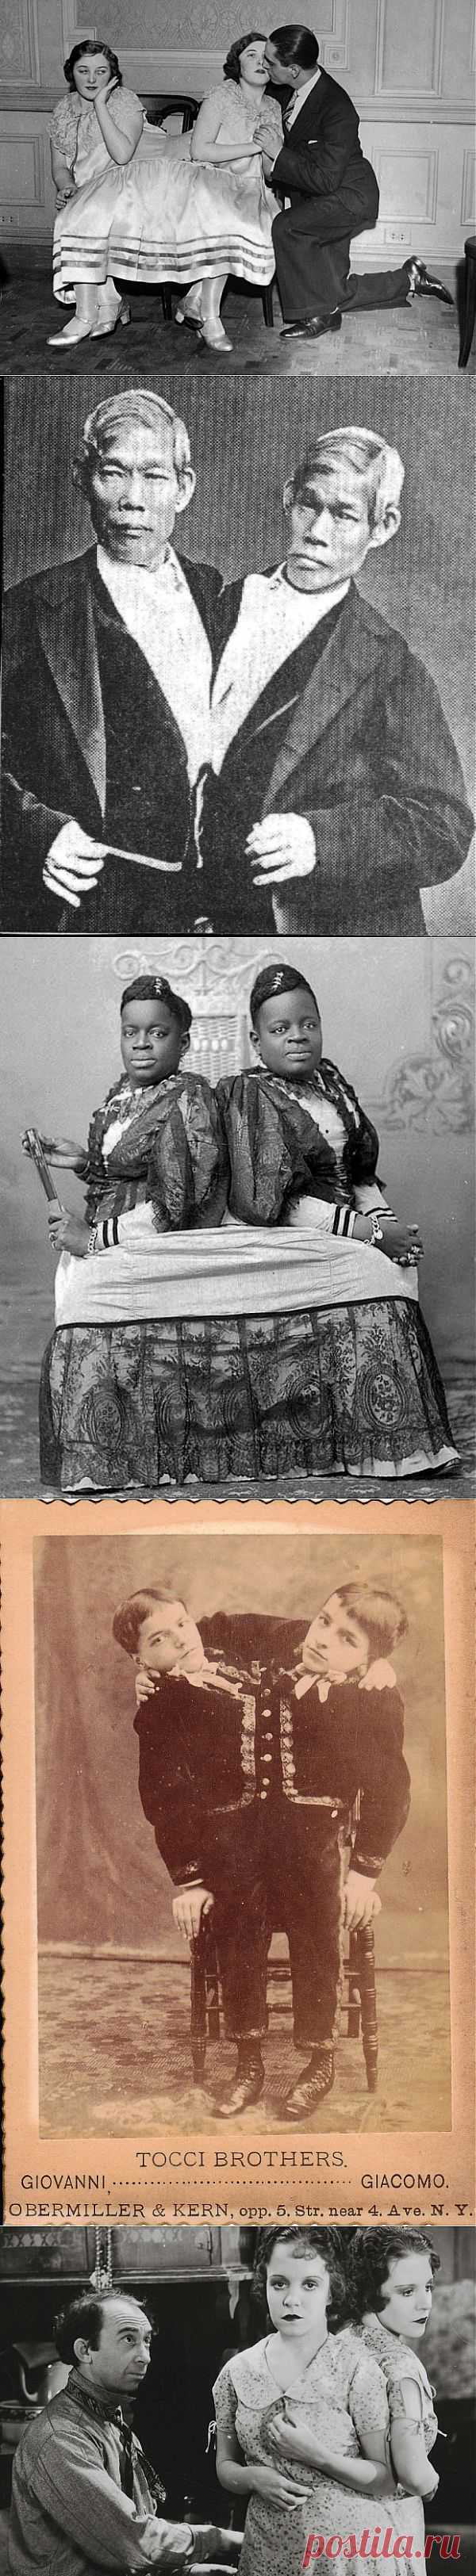 10 любопытных историй о знаменитых сиамских близнецах | Любители истории